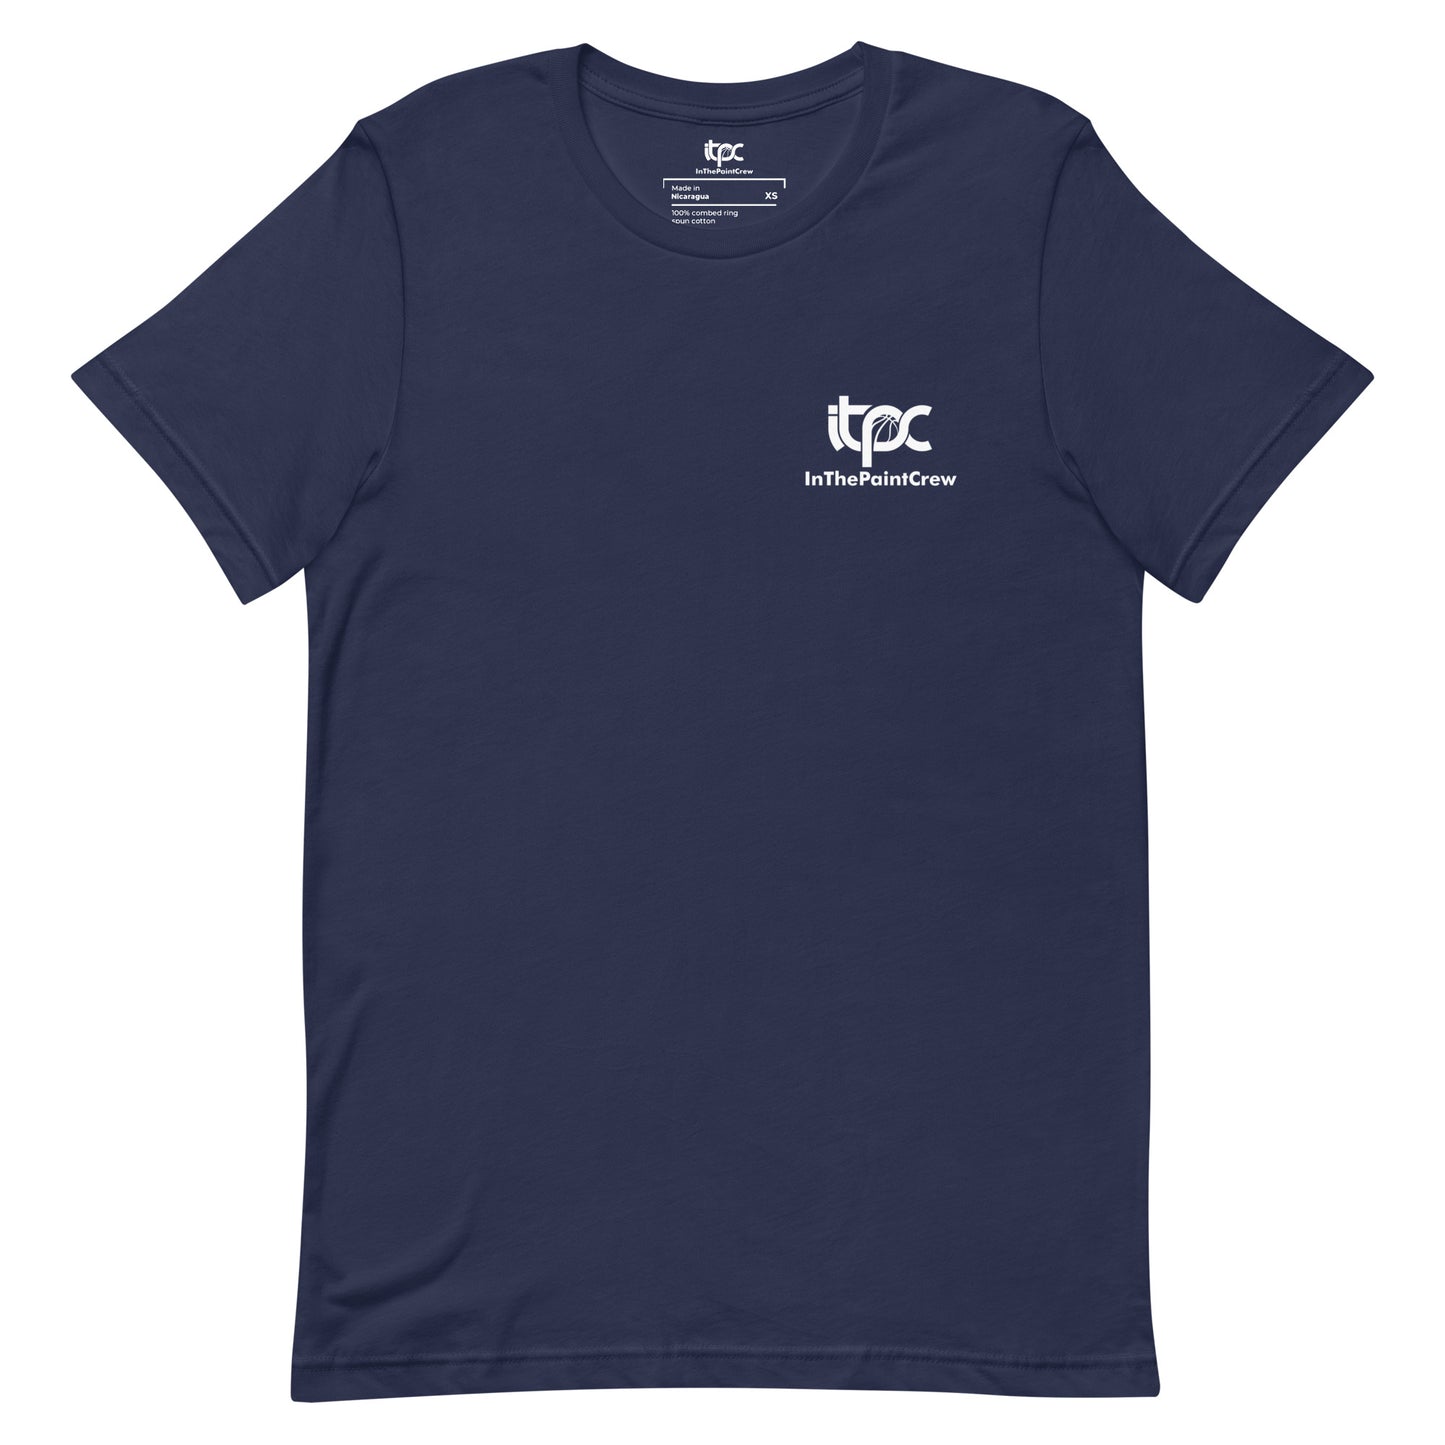 InThePaintCrew - "At Heart" t-shirt